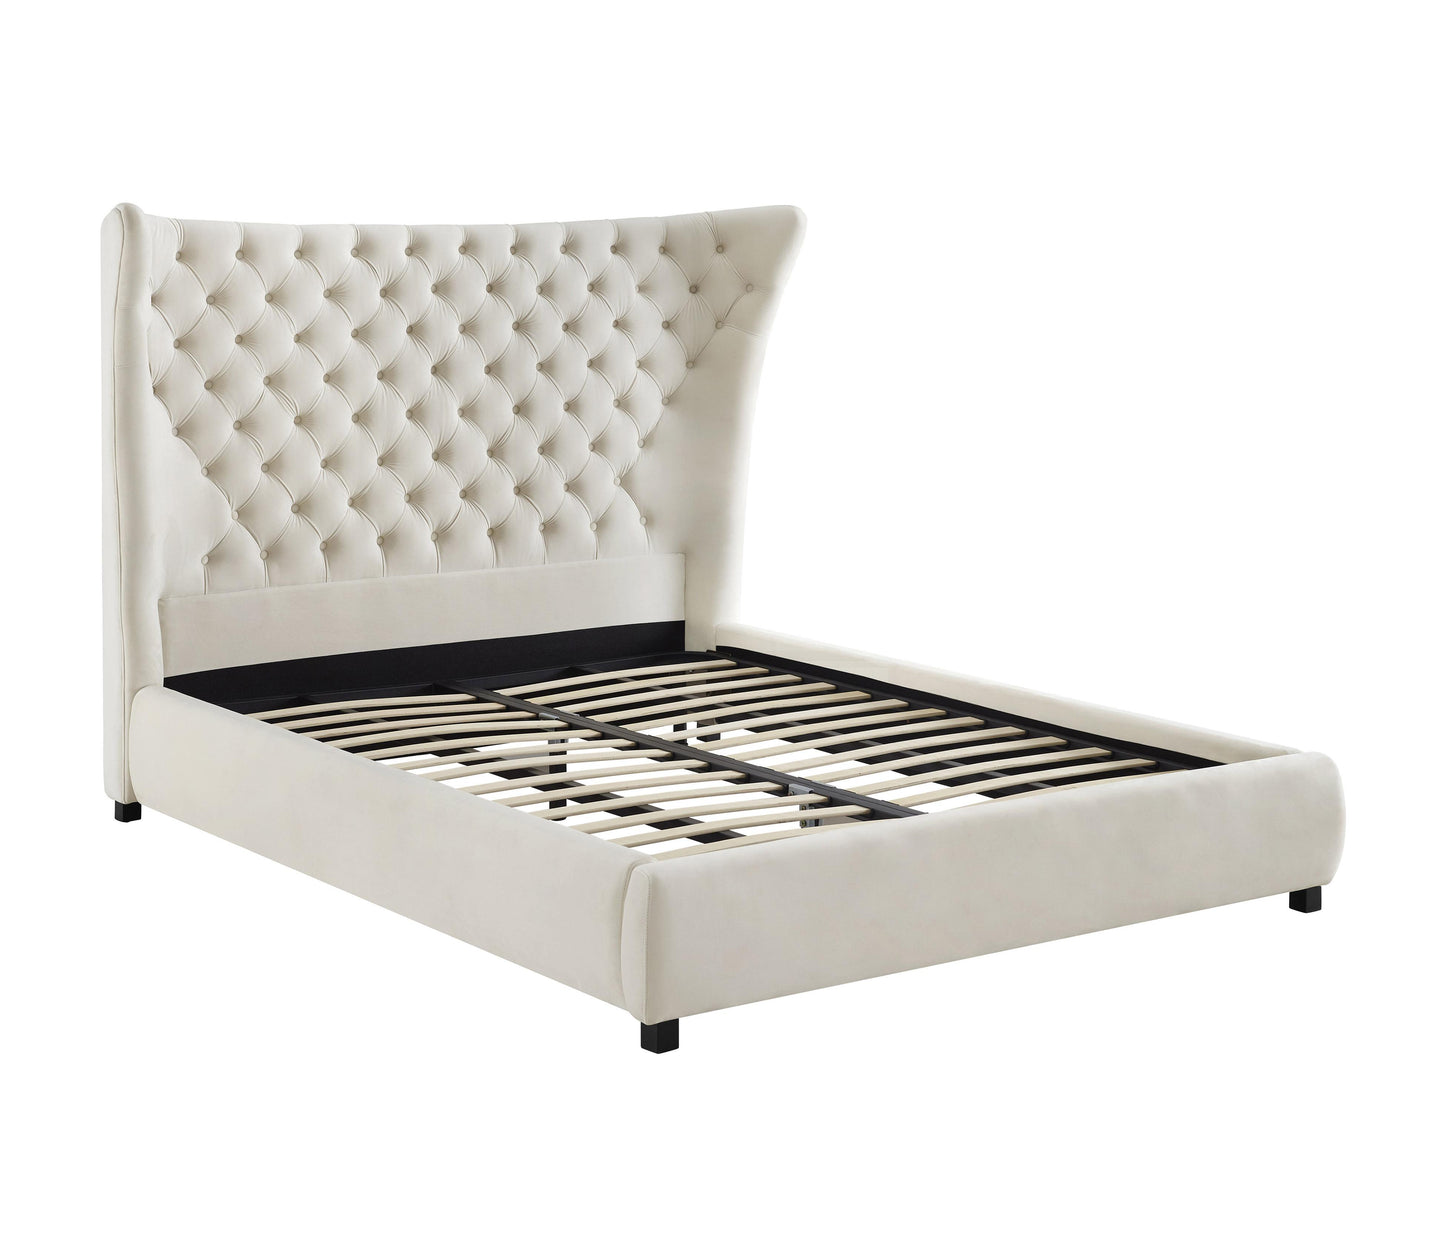 Tov Furniture Sassy Cream Velvet King Bed